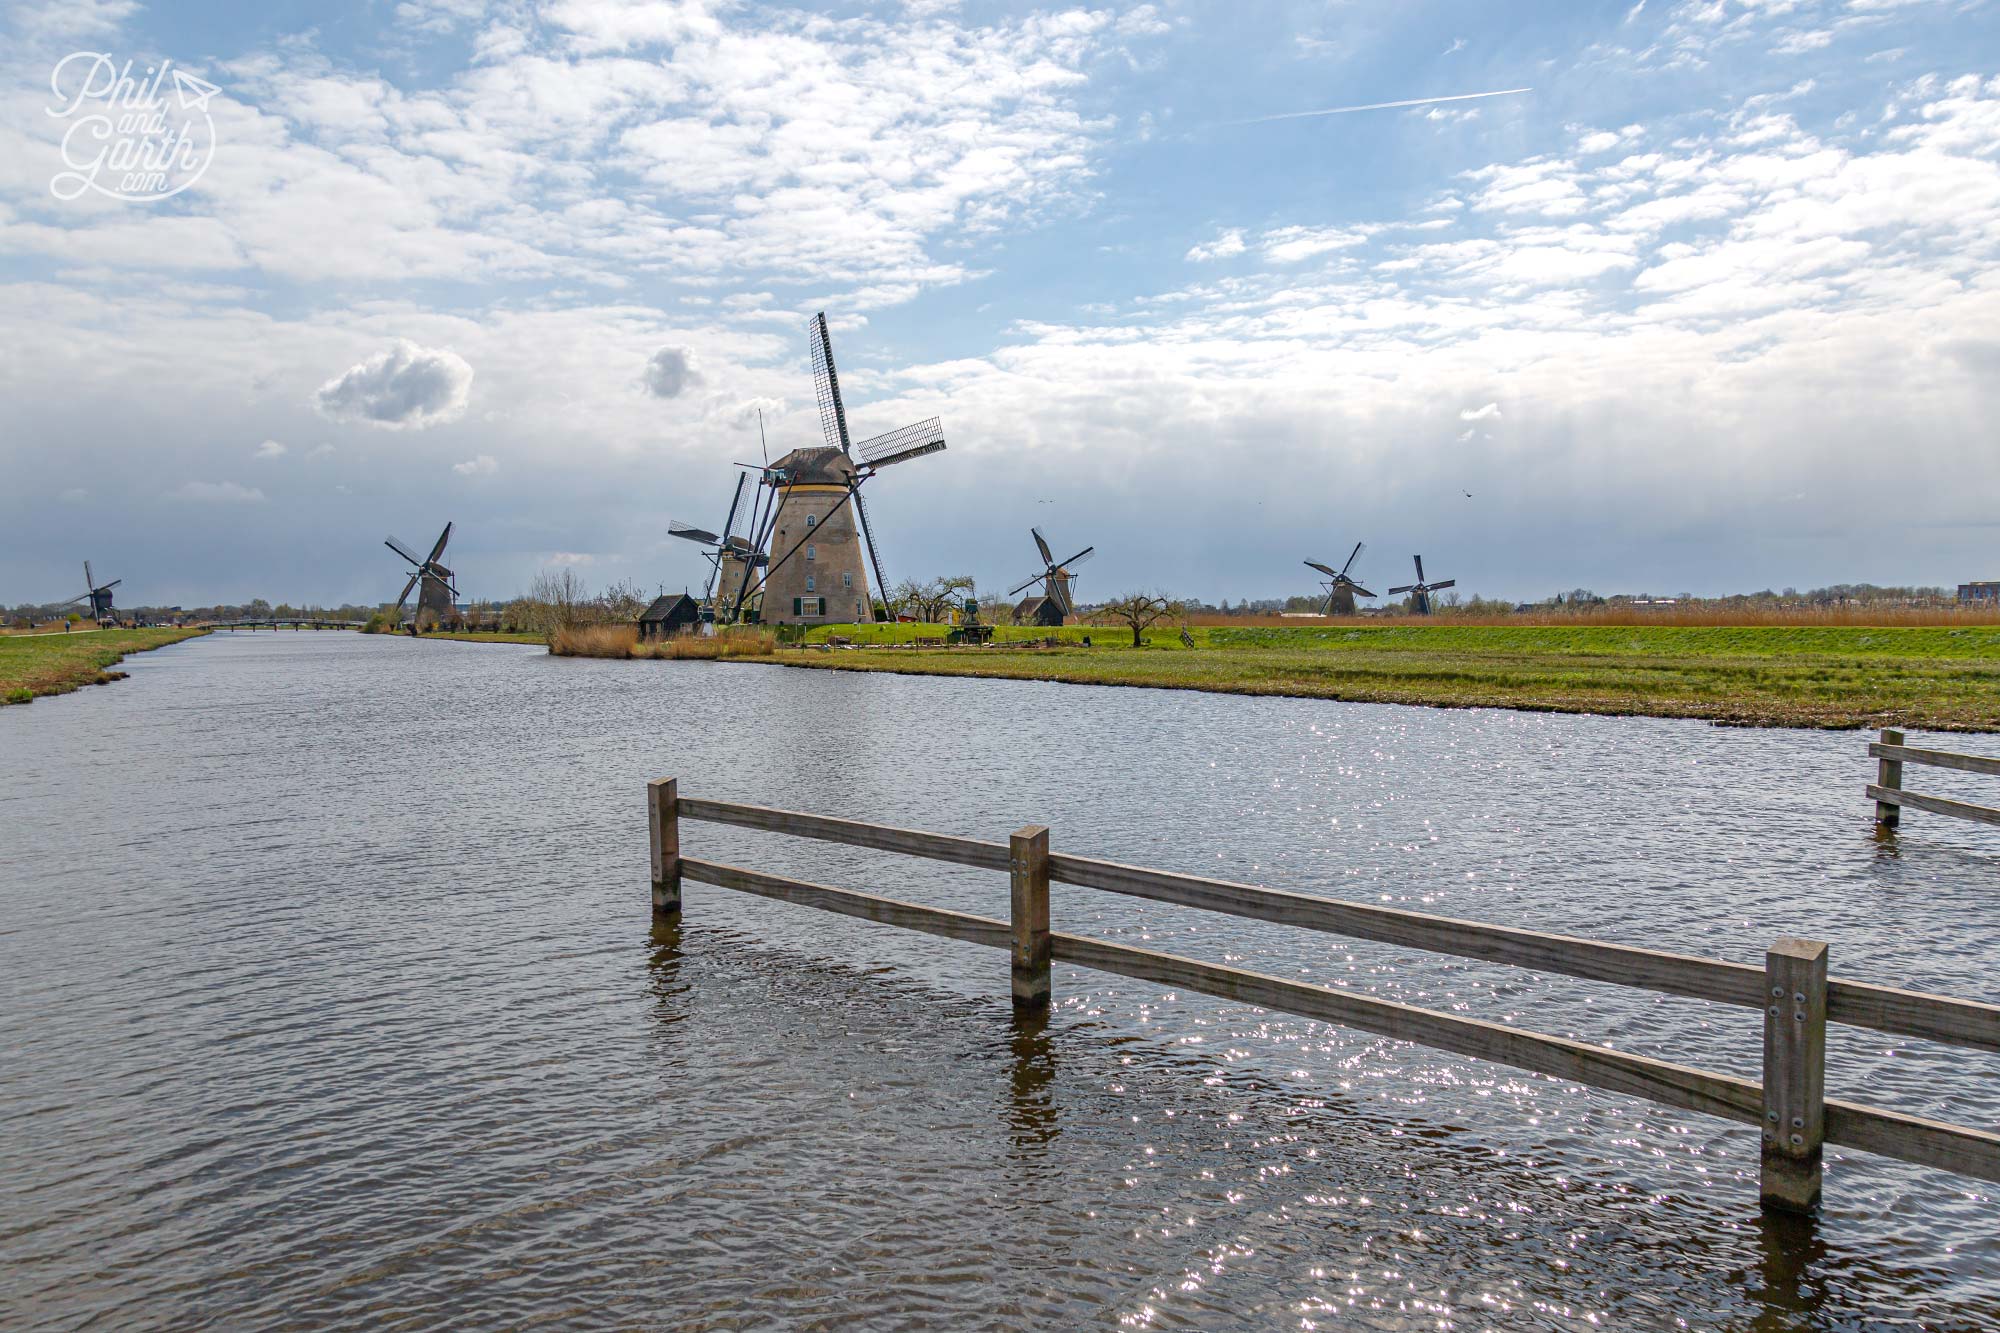 The lovely landscape of windmills at Kinderdijk